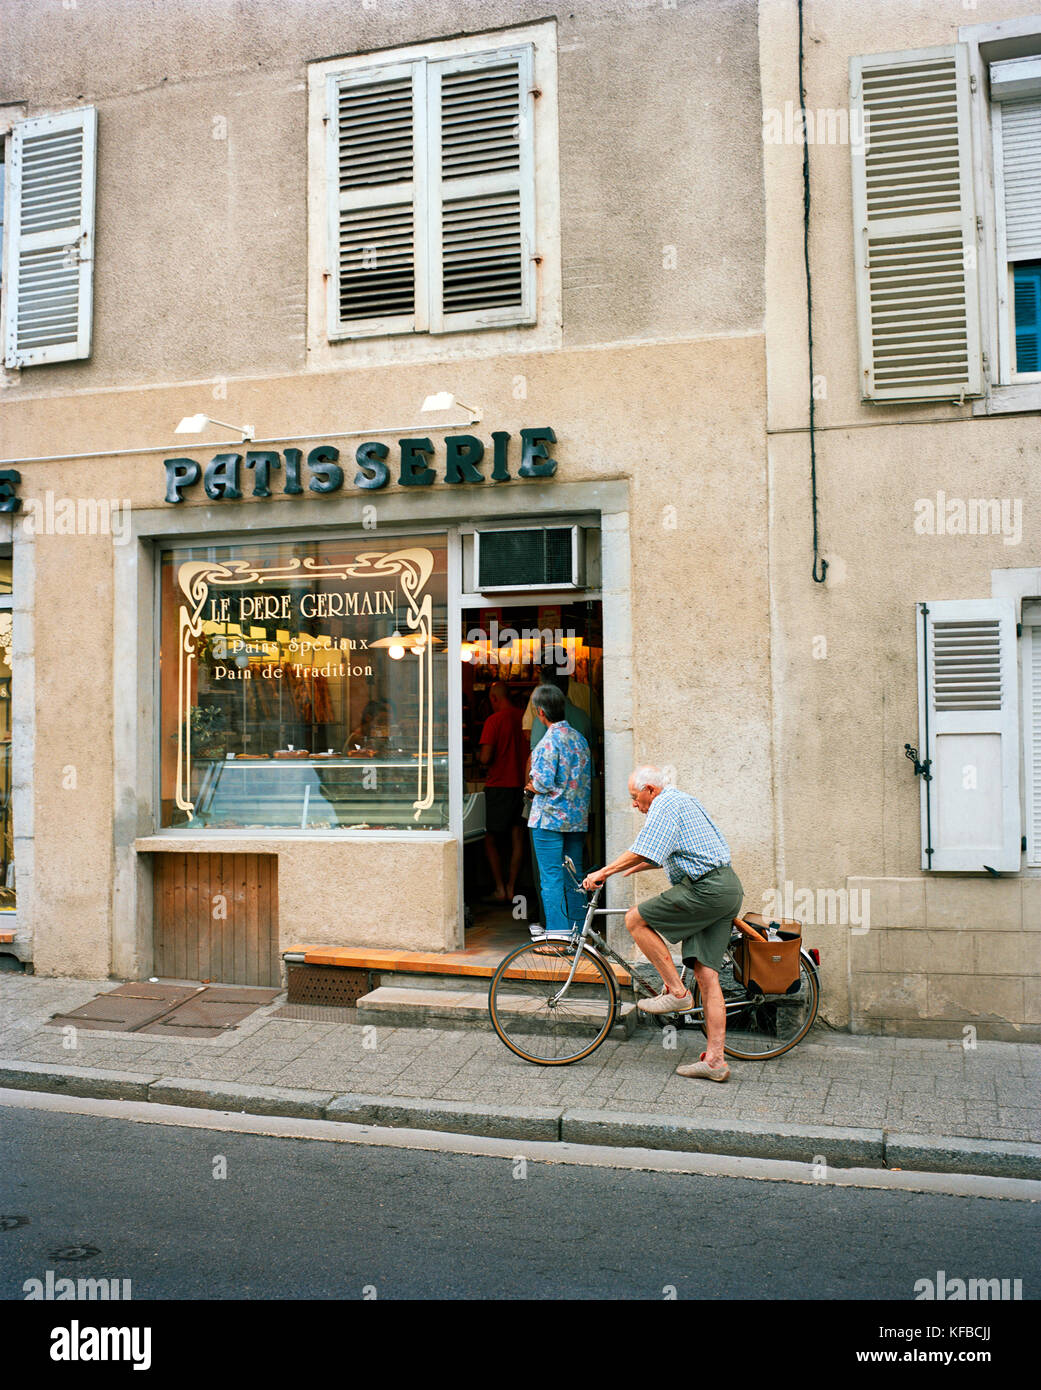 La France, de l'Arbois, l'homme quitte le pere germain patisserie sur son vélo avec du pain dans son panier, région des vins du Jura Banque D'Images